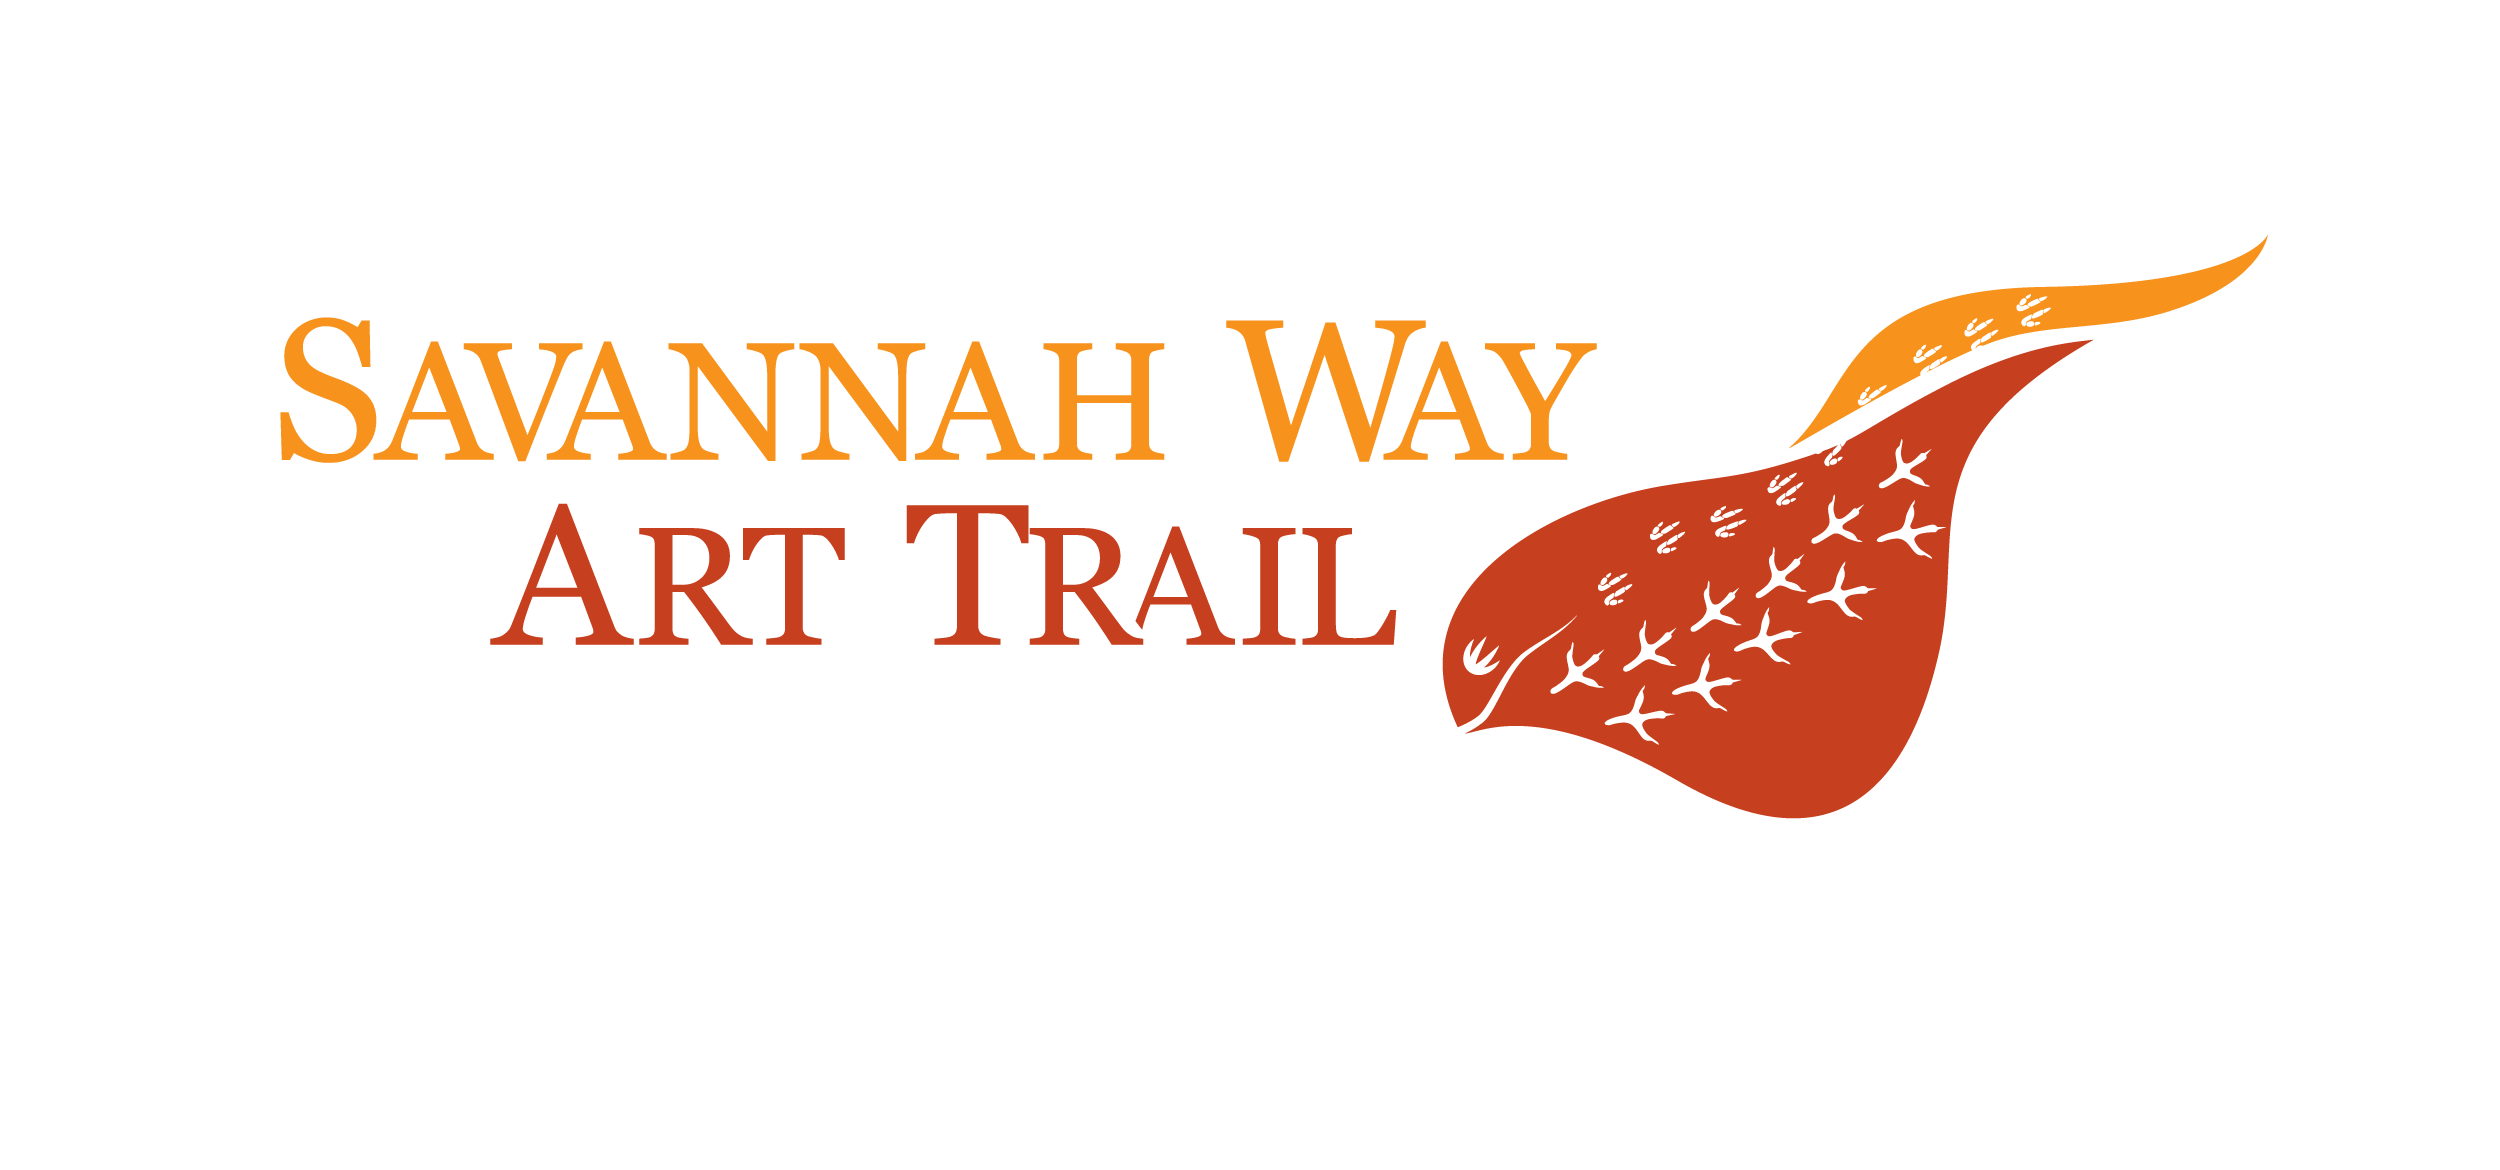 Savannah Way Art Trail